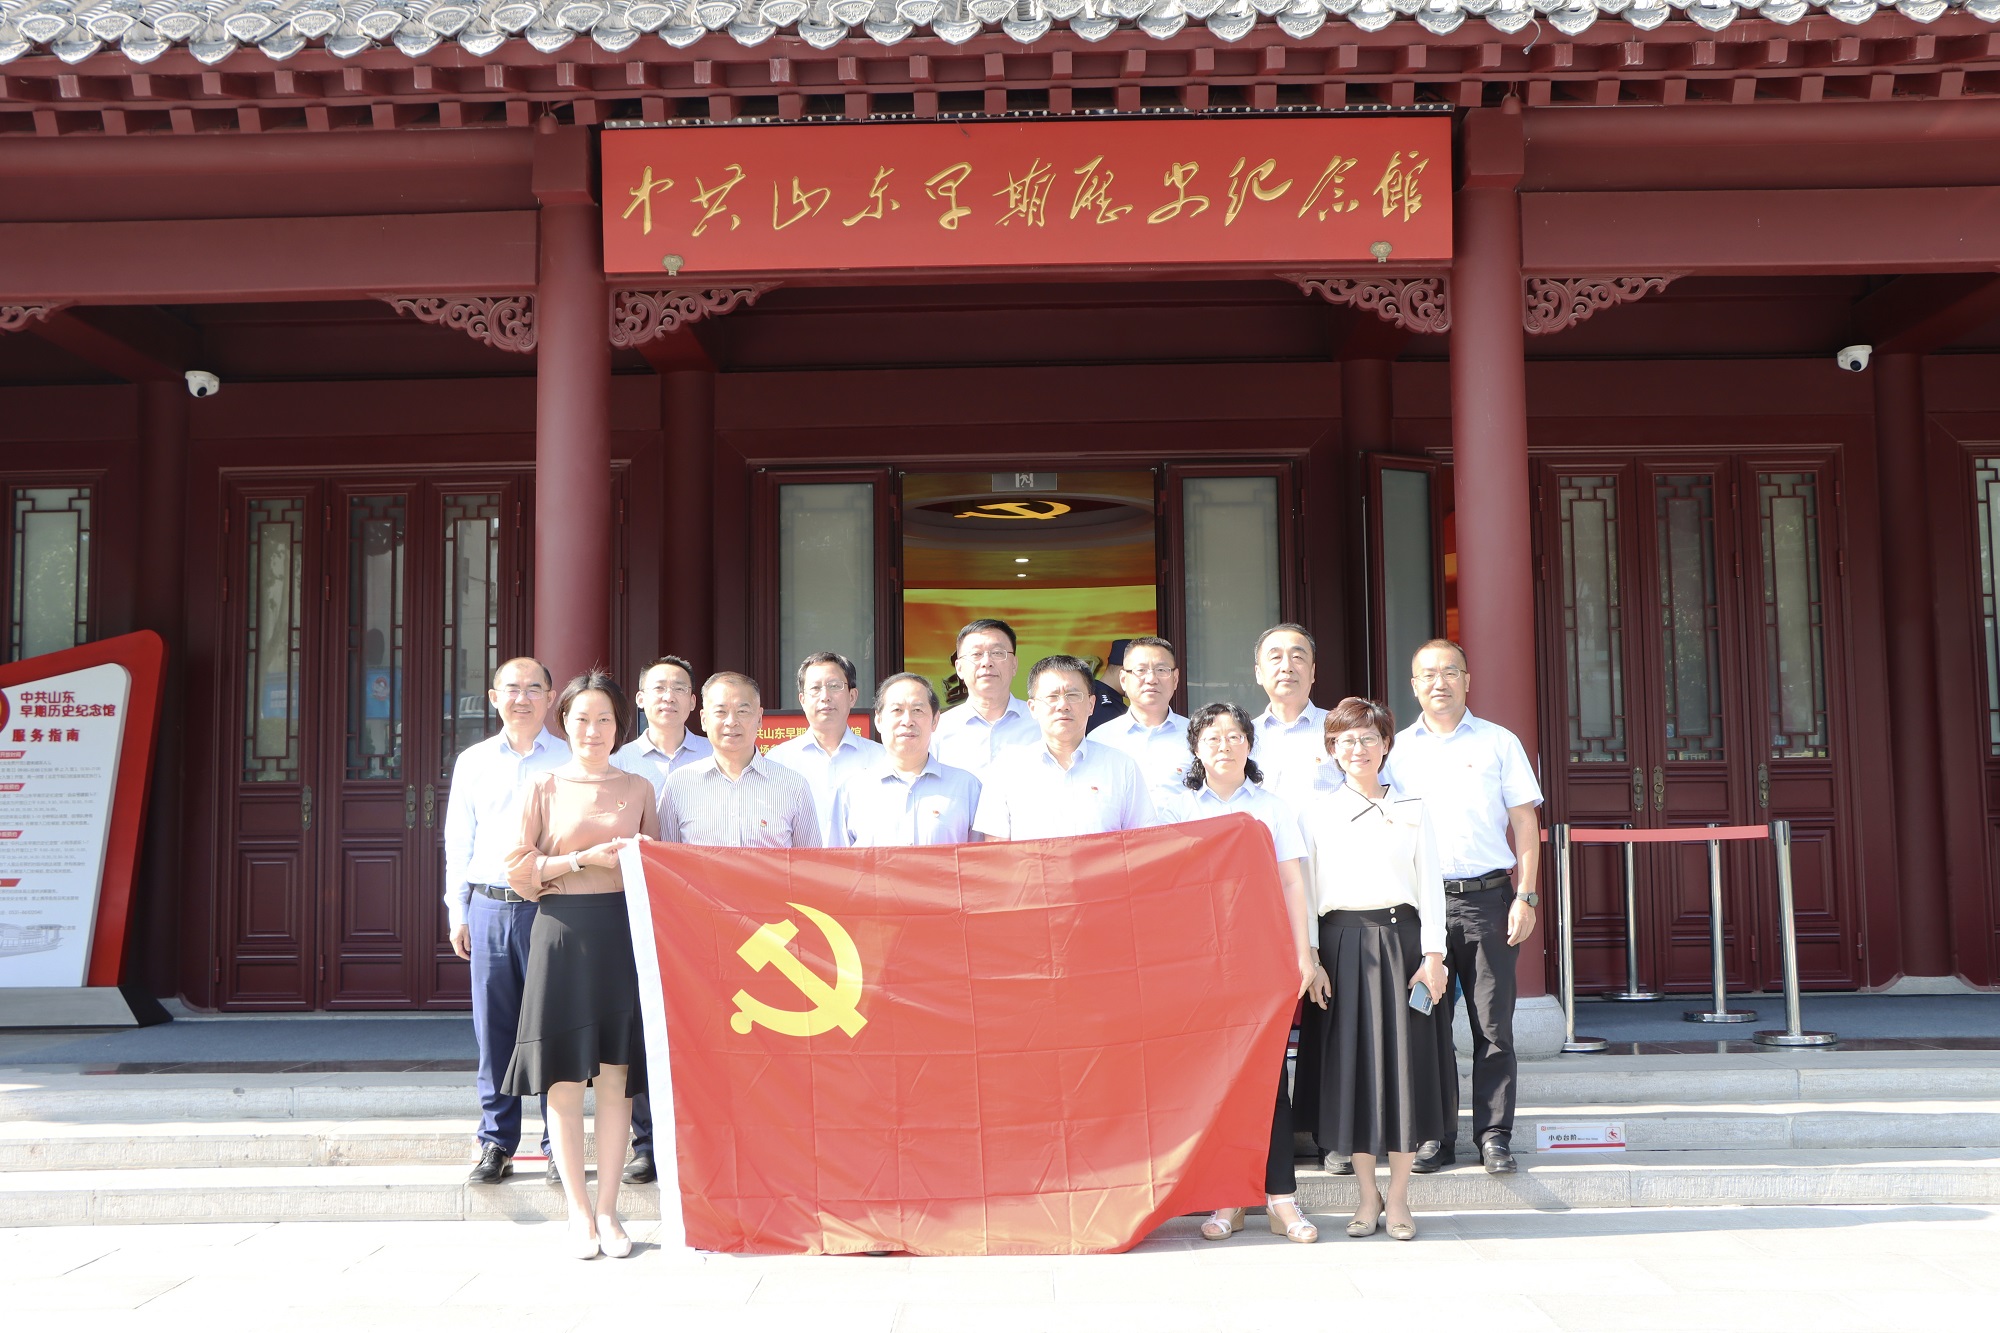 集團黨委組織參觀山東省早期歷史紀念館活動